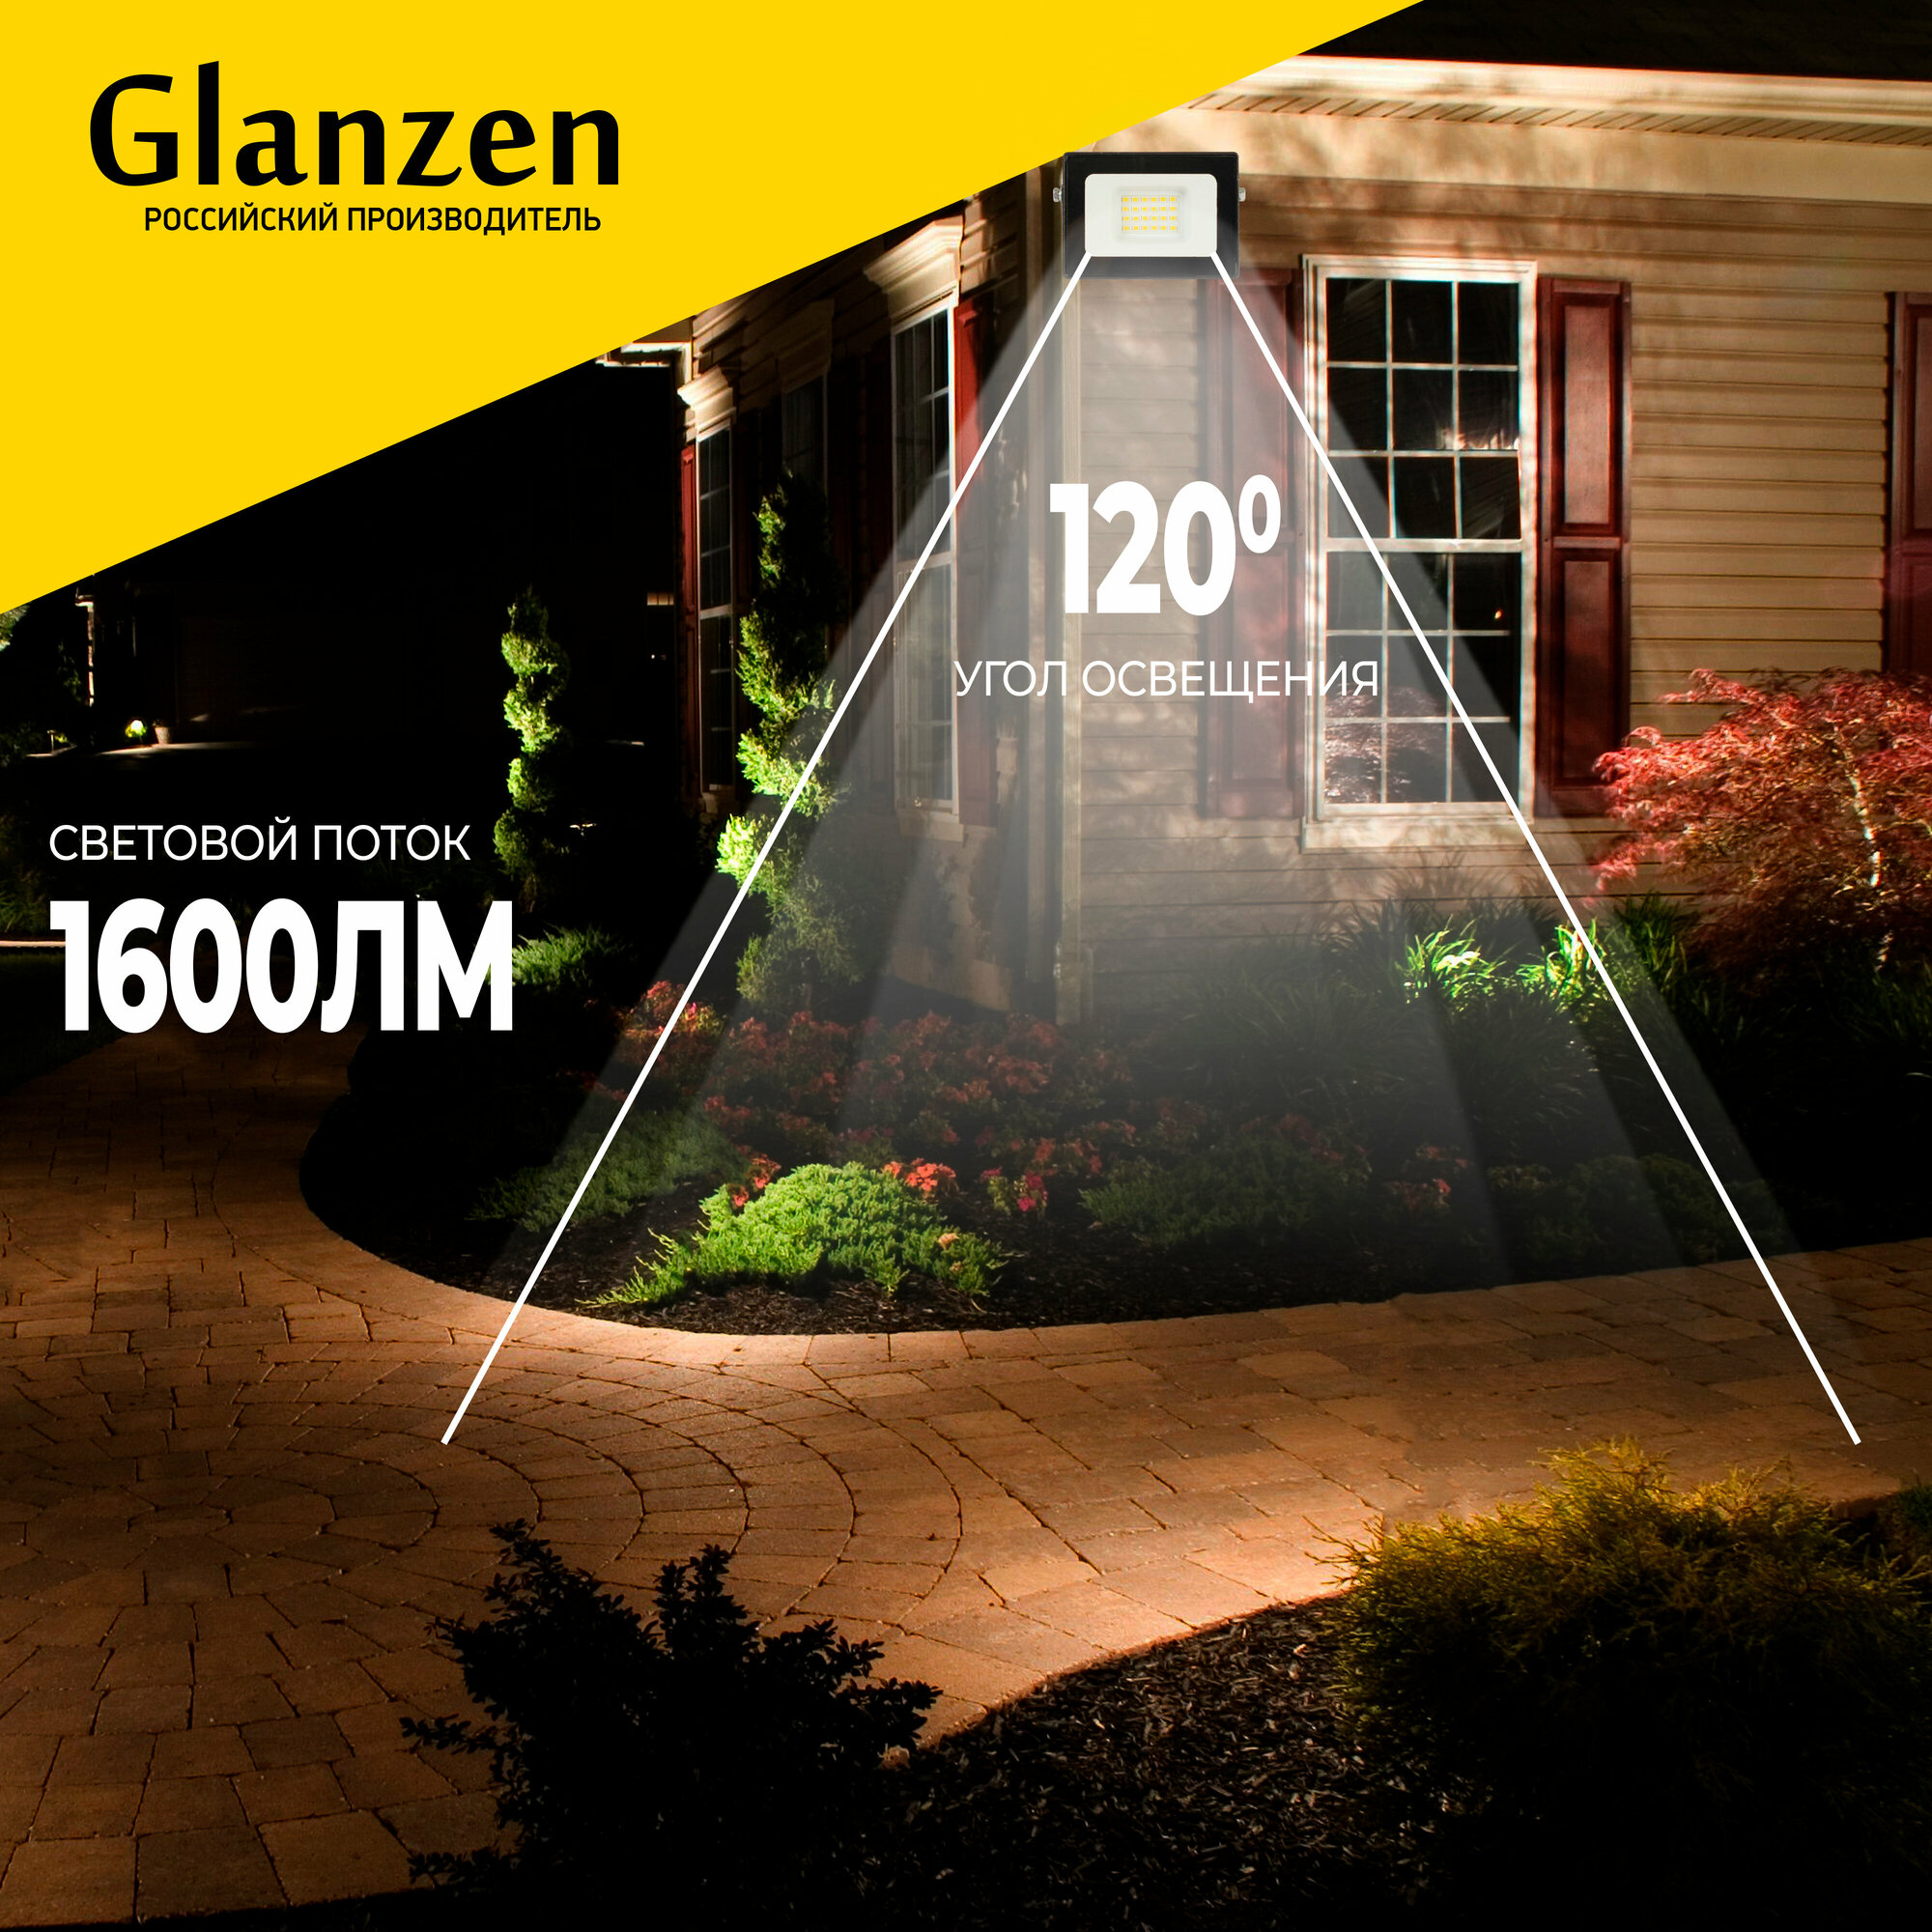 Светодиодный прожектор GLANZEN 20 Вт 6500К IP65 FAD-0002-20-SL